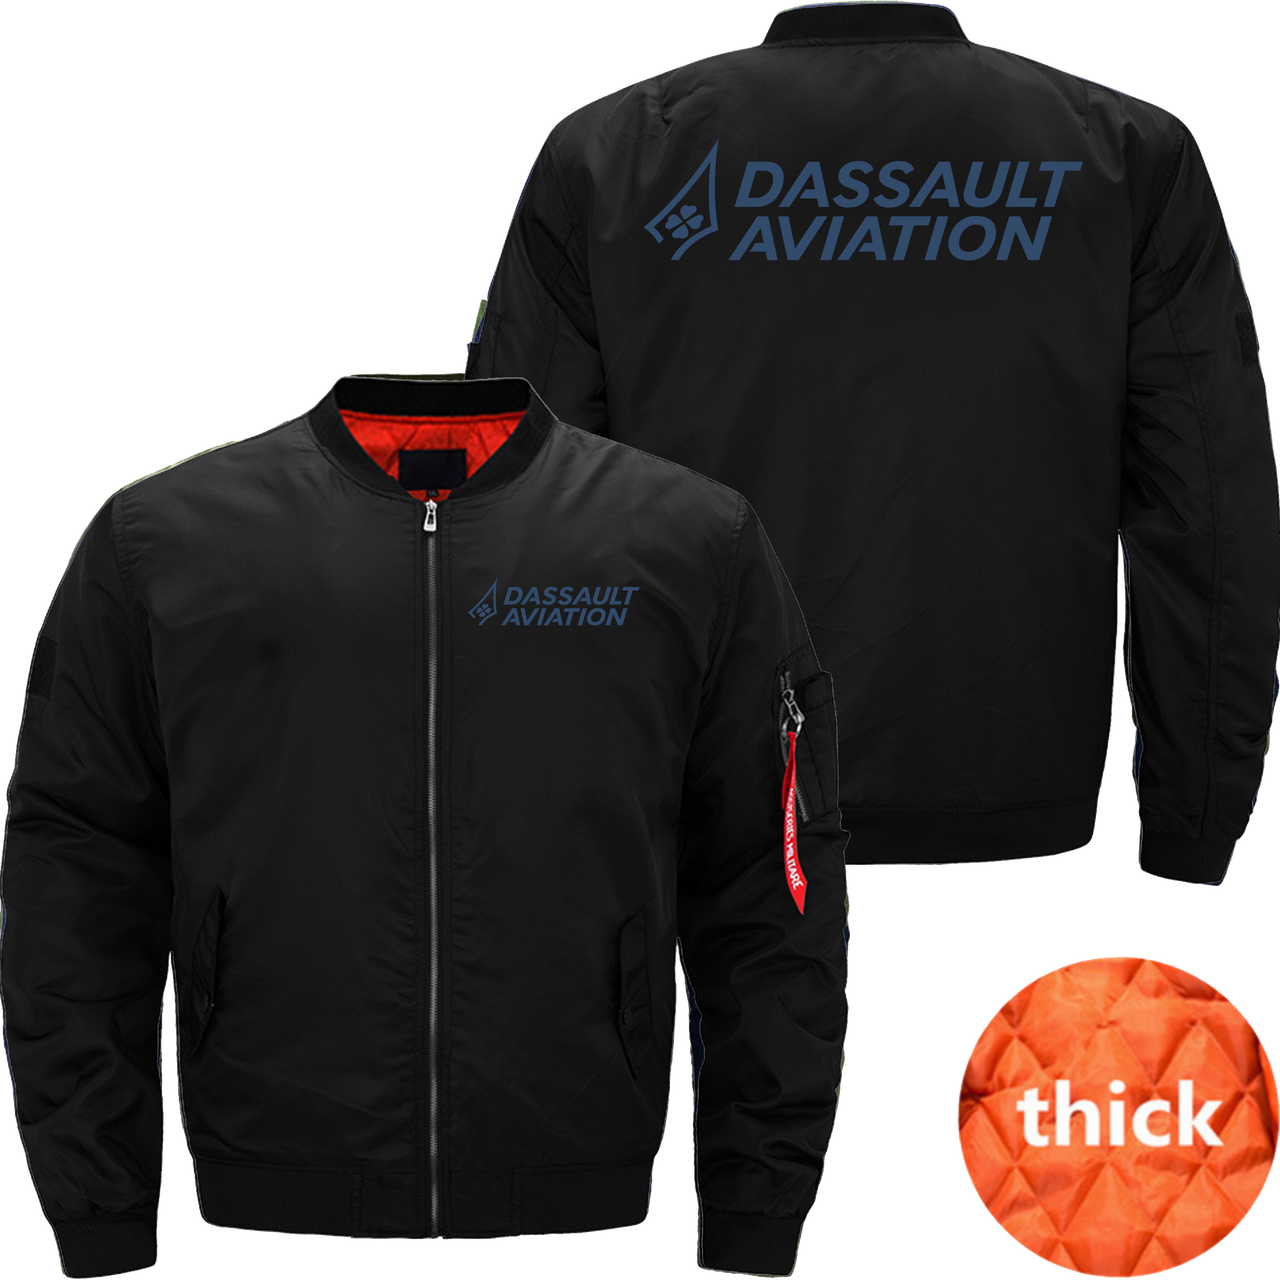 Dassault aviation Jacket